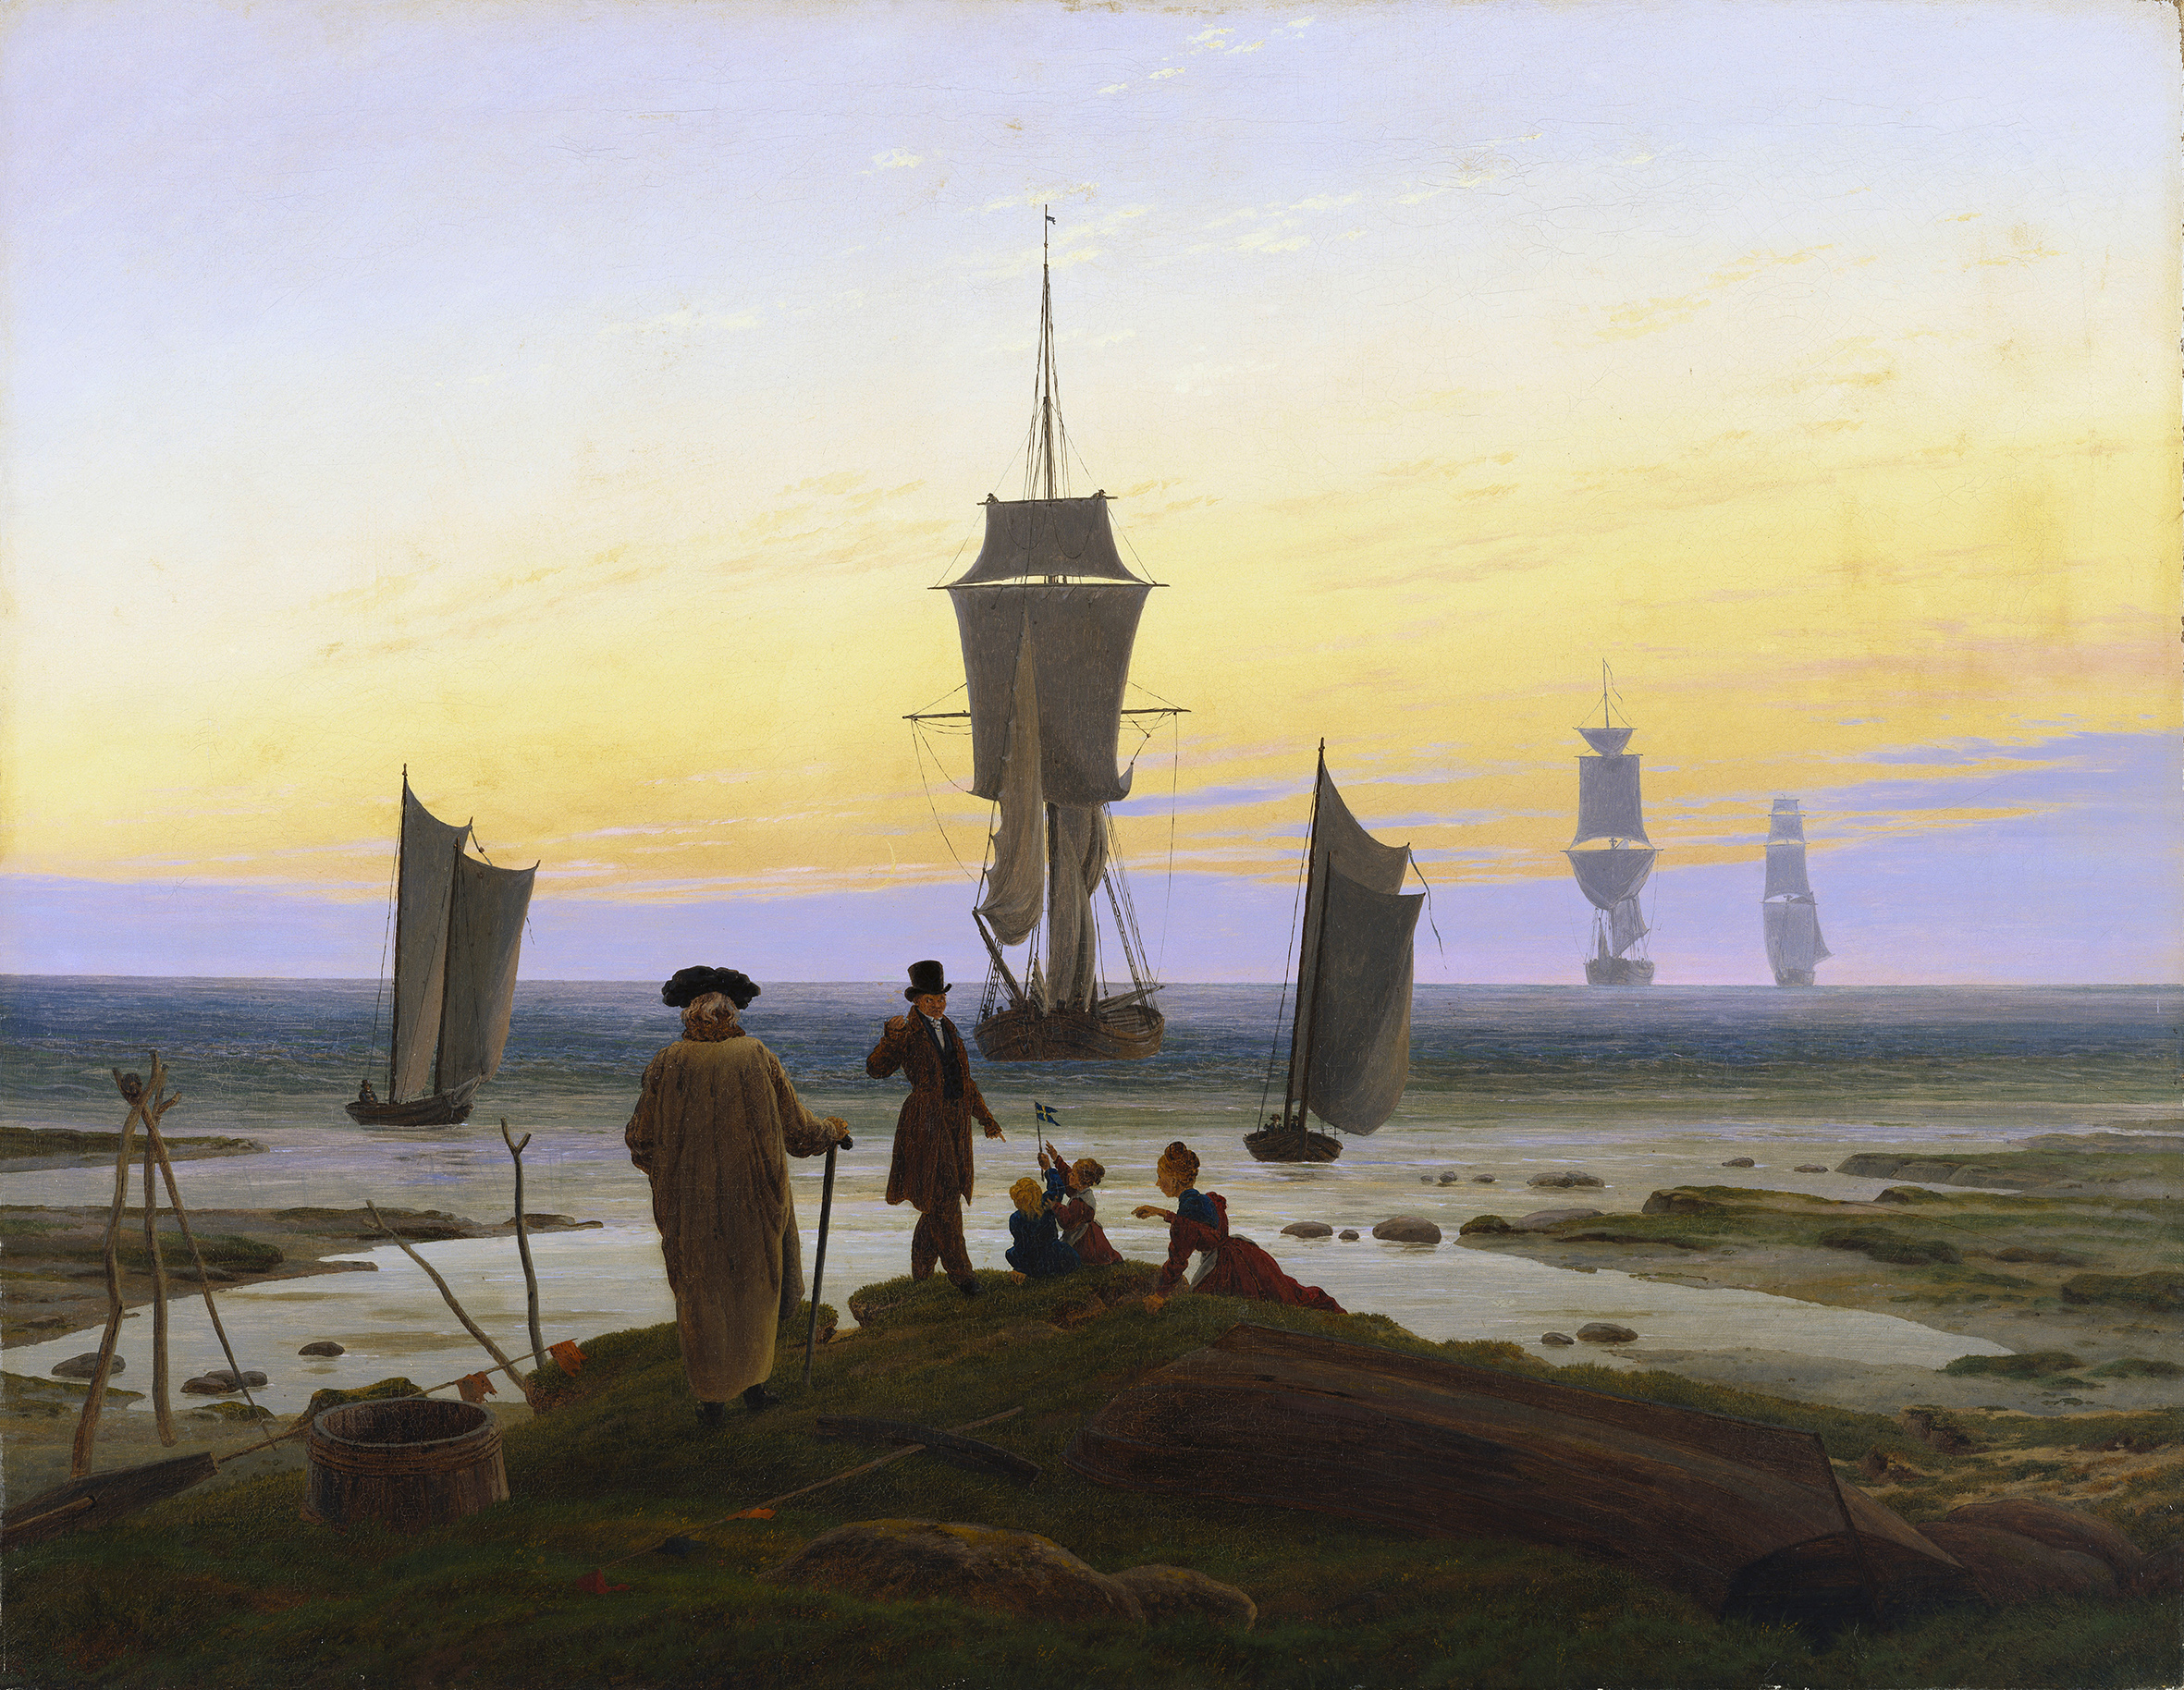 Les Étapes de la Vie by Caspar David Friedrich - 1835 - 72,5 cm × 94 cm Museum der bildenden Künste